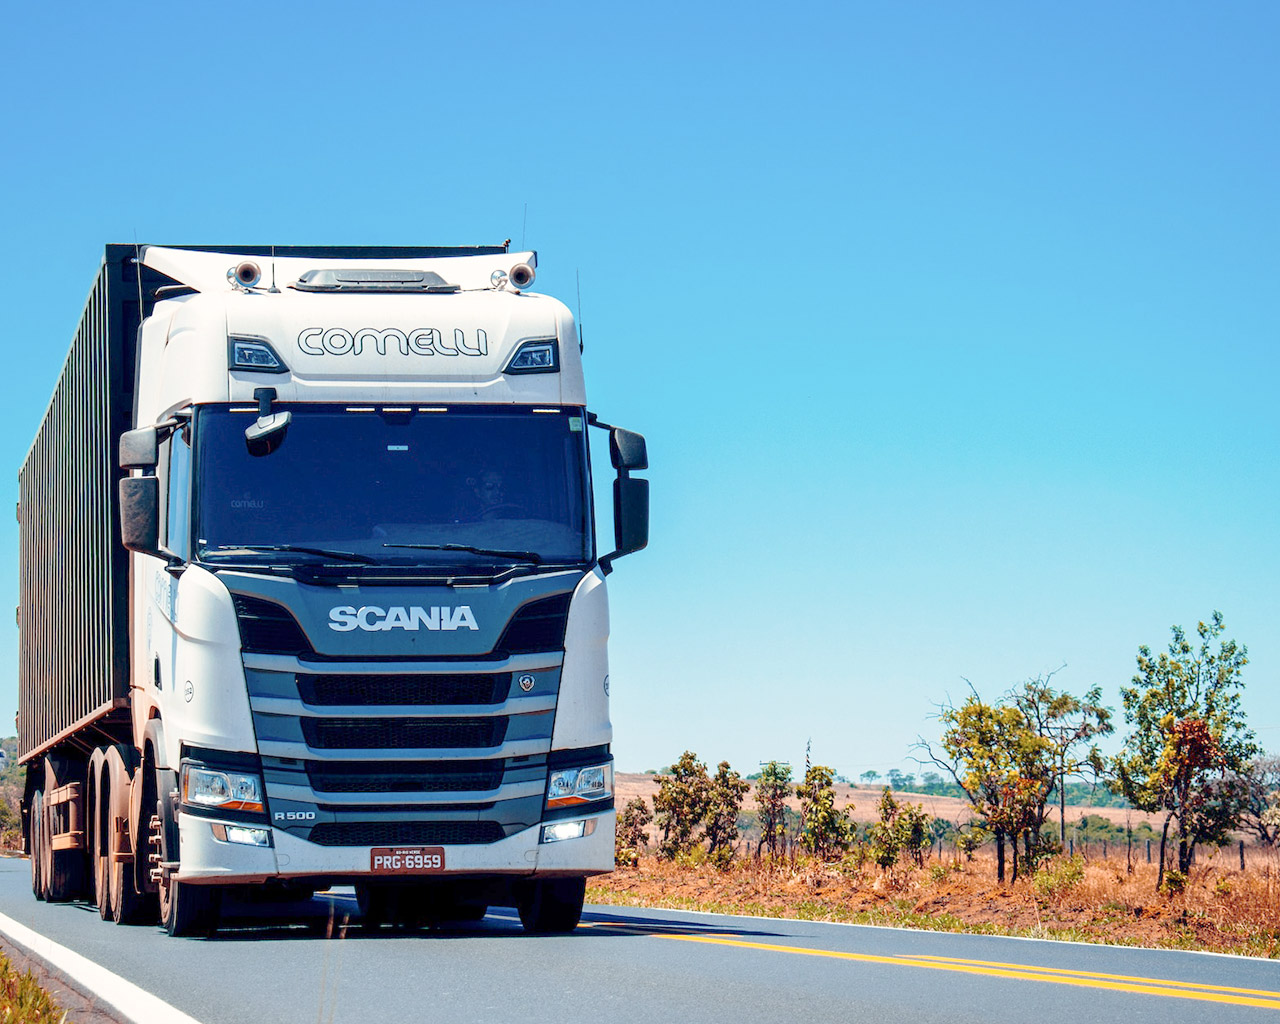 ‌Carnet de camión: requisitos y cómo obtener el permiso C en España